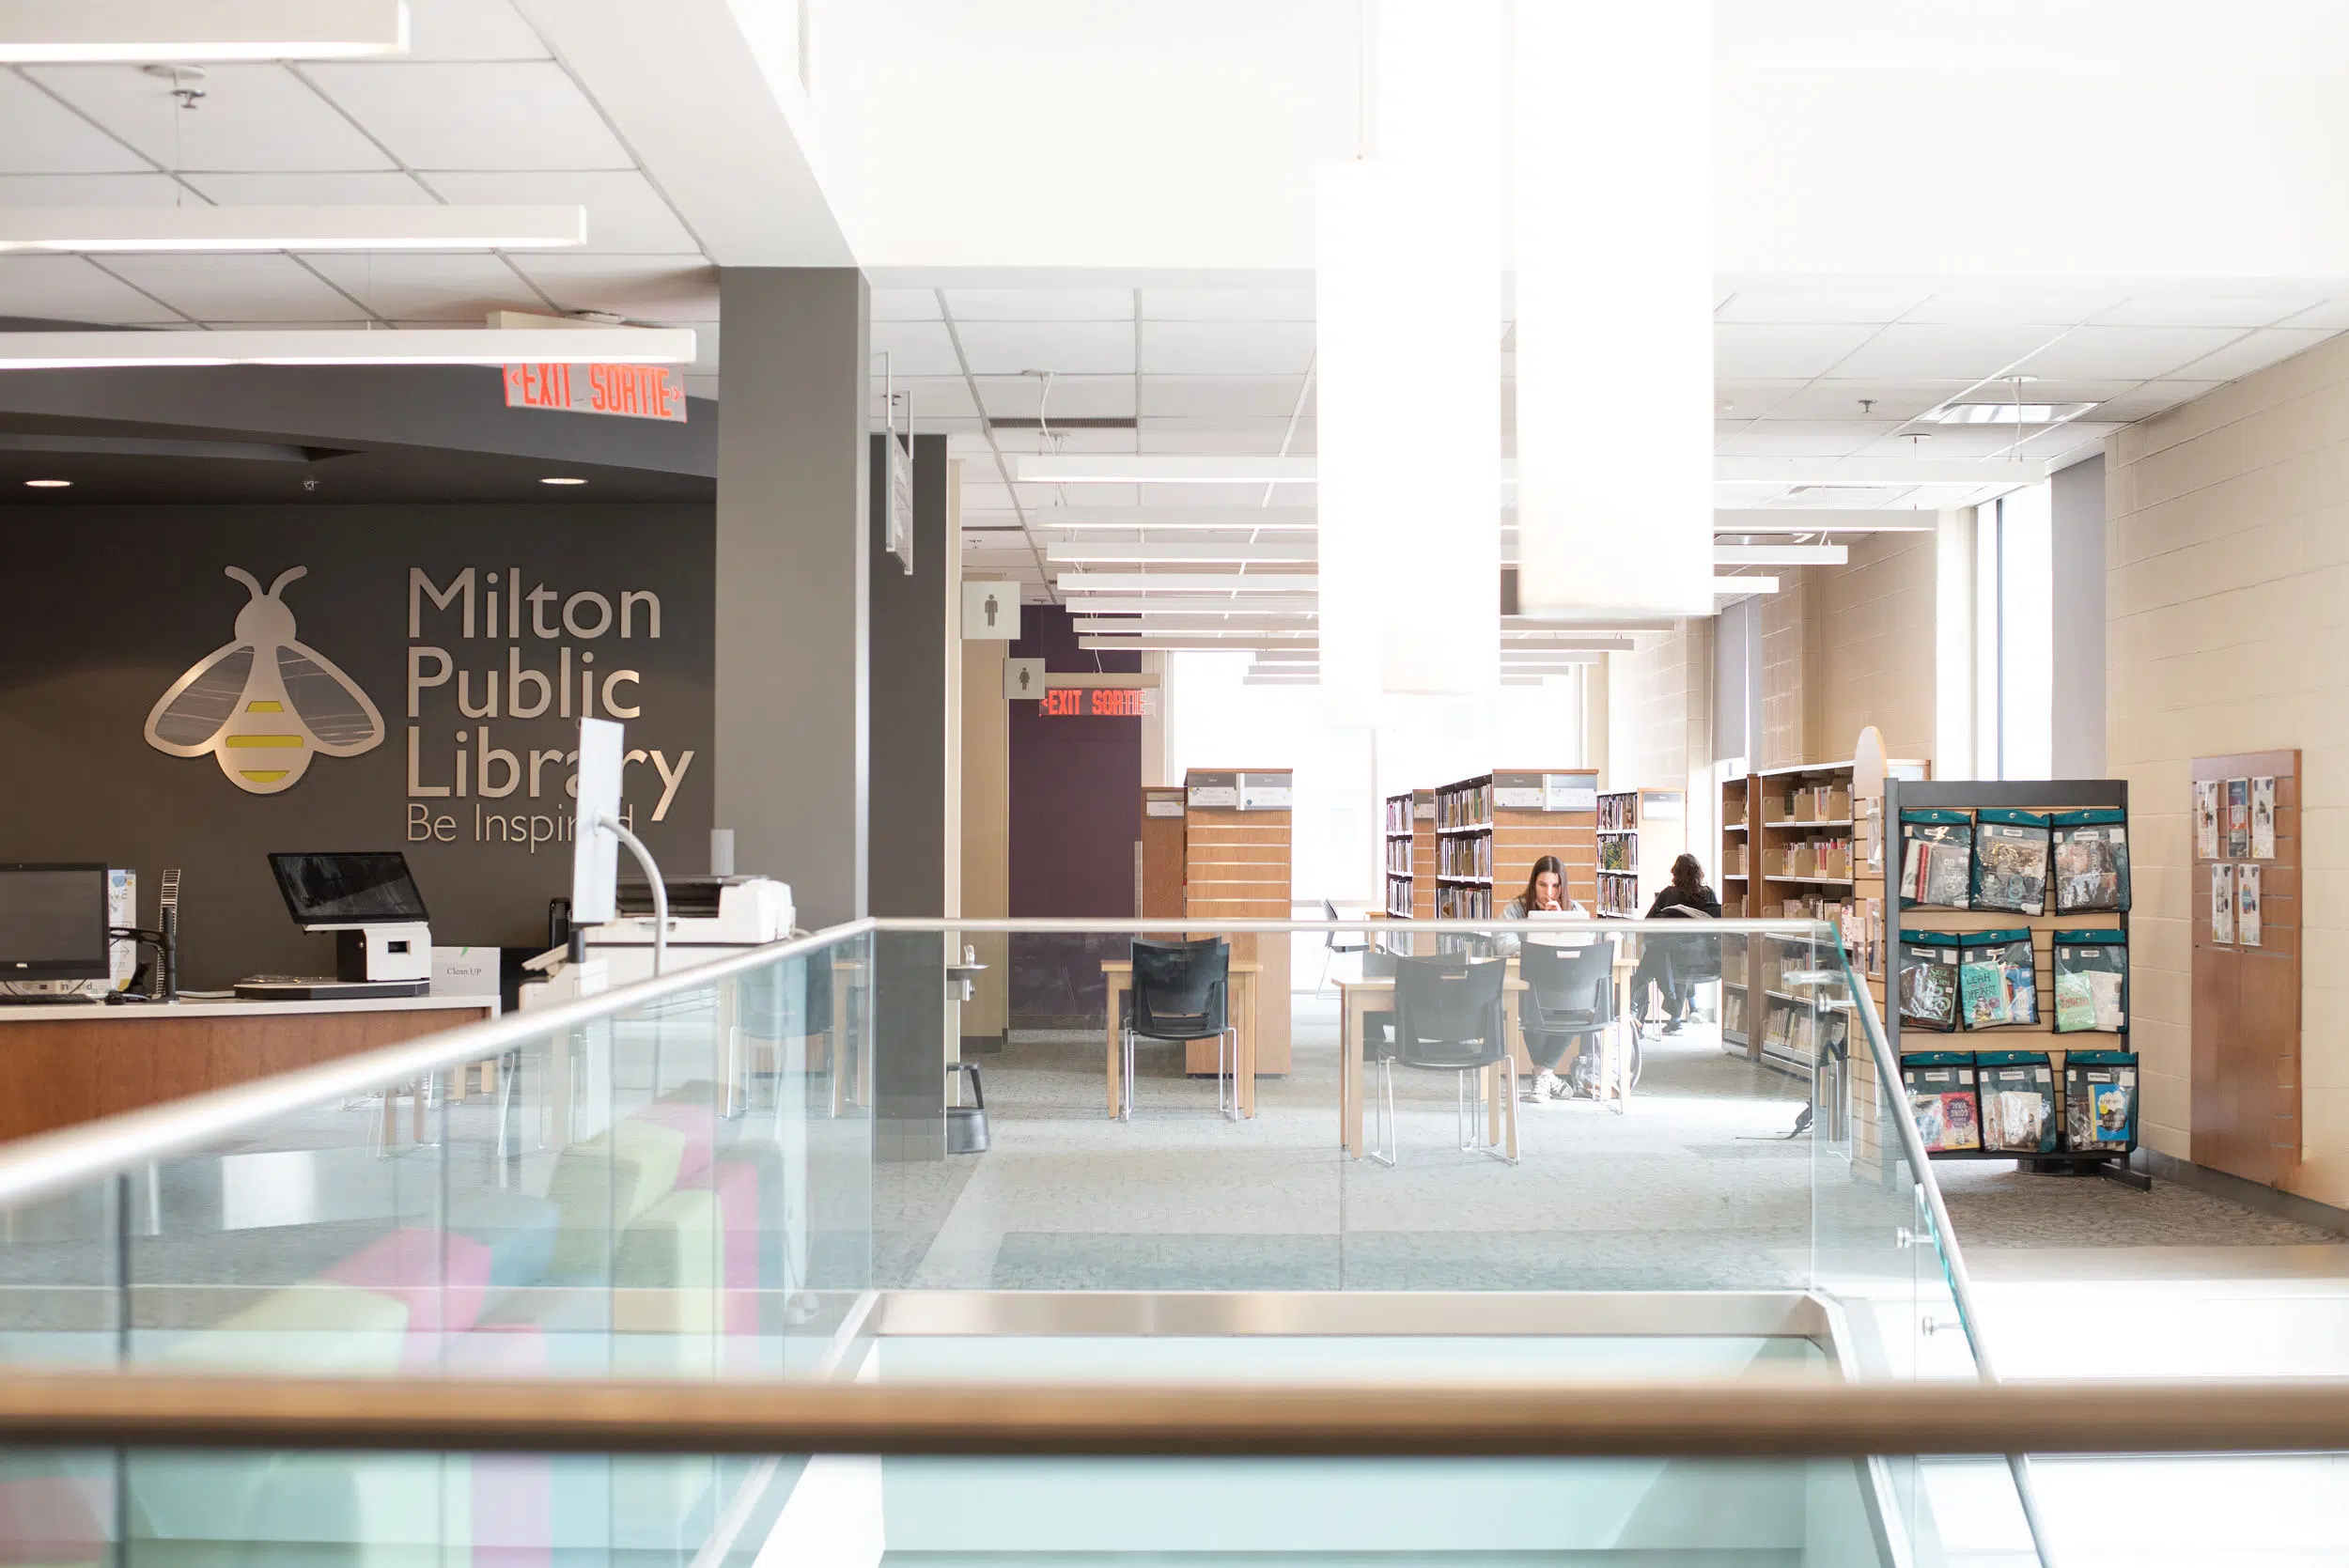 Milton Public Library announces completion of diversity initiative